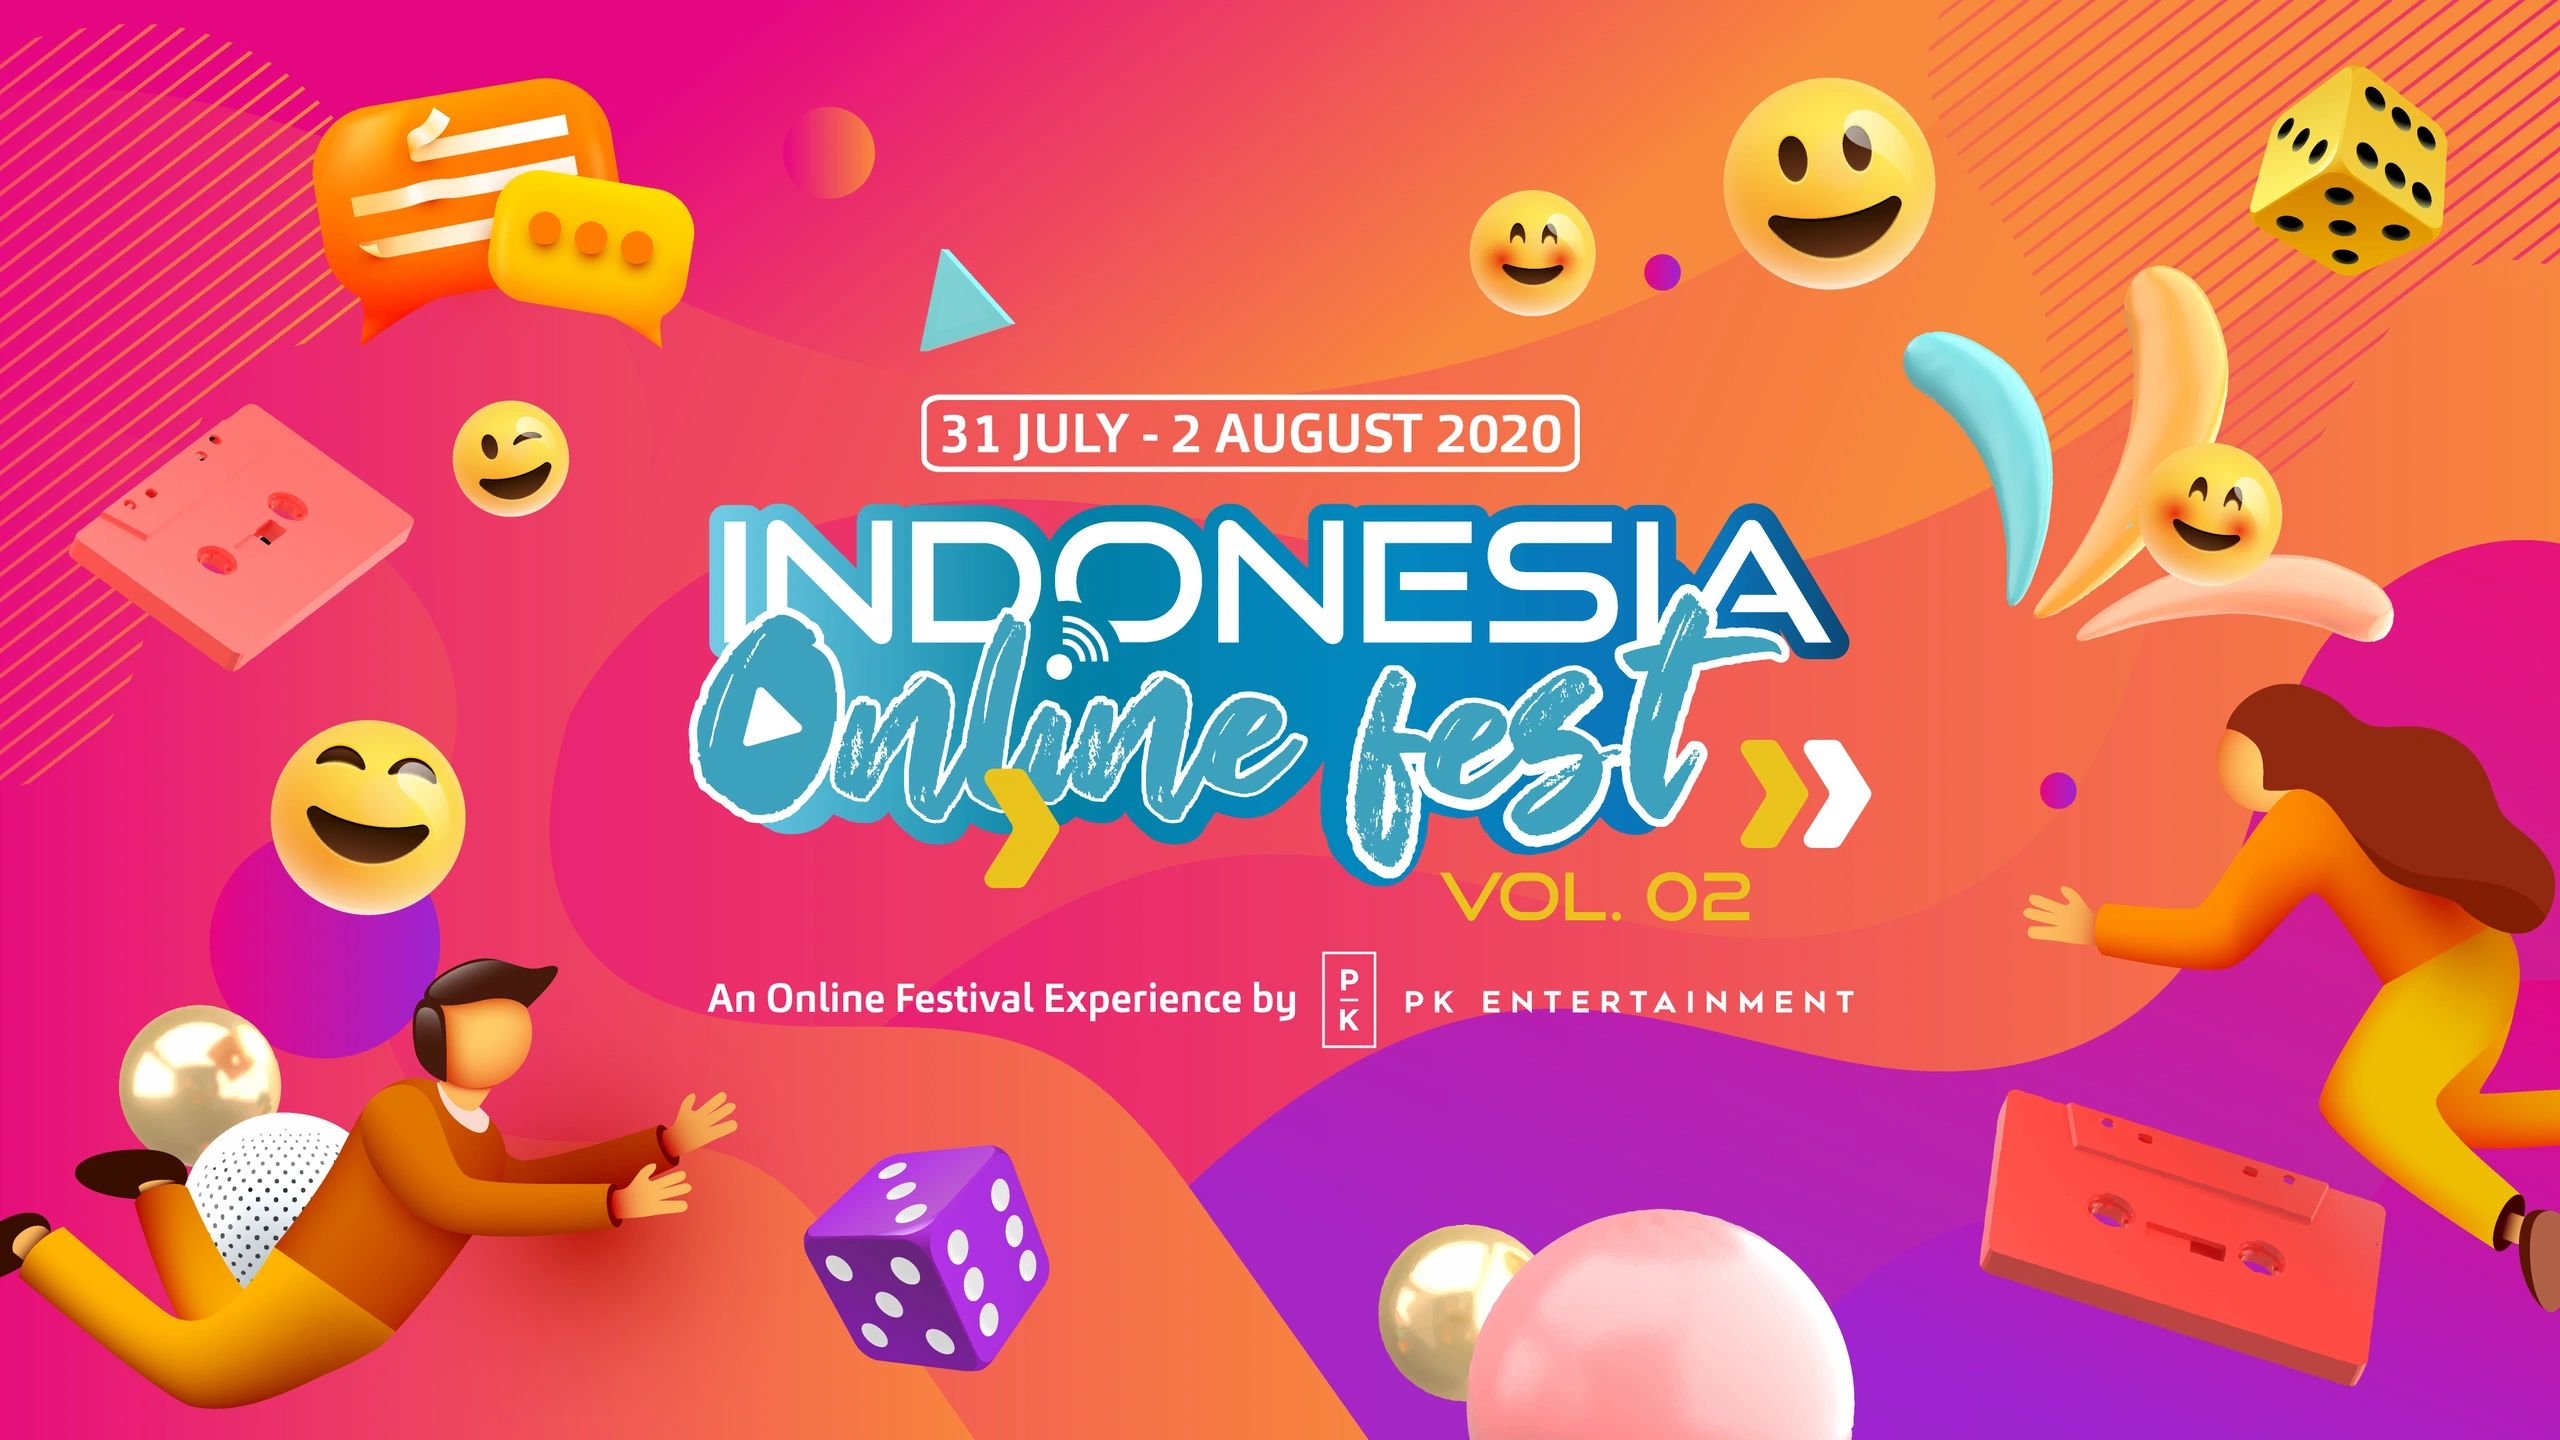 Indonesia Online Festival - Online Festival, Entertainment | Indonesia Online Festival